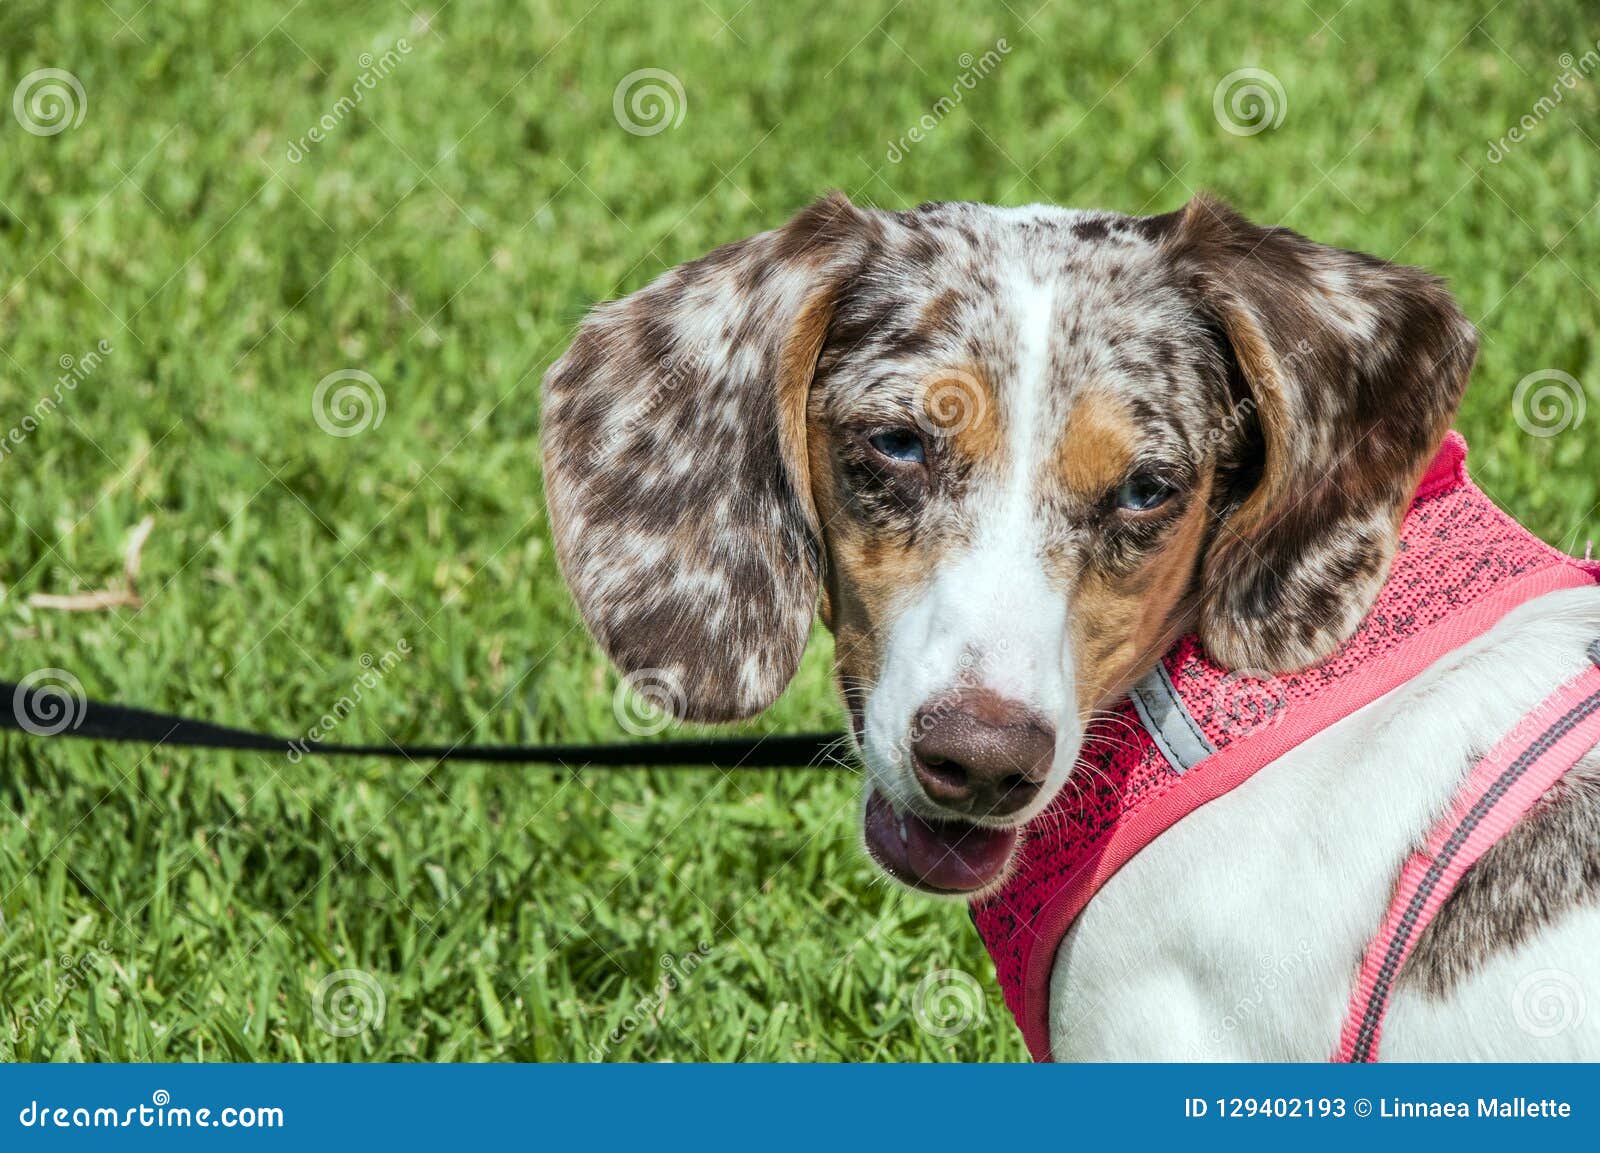 blue and tan dapple dachshund